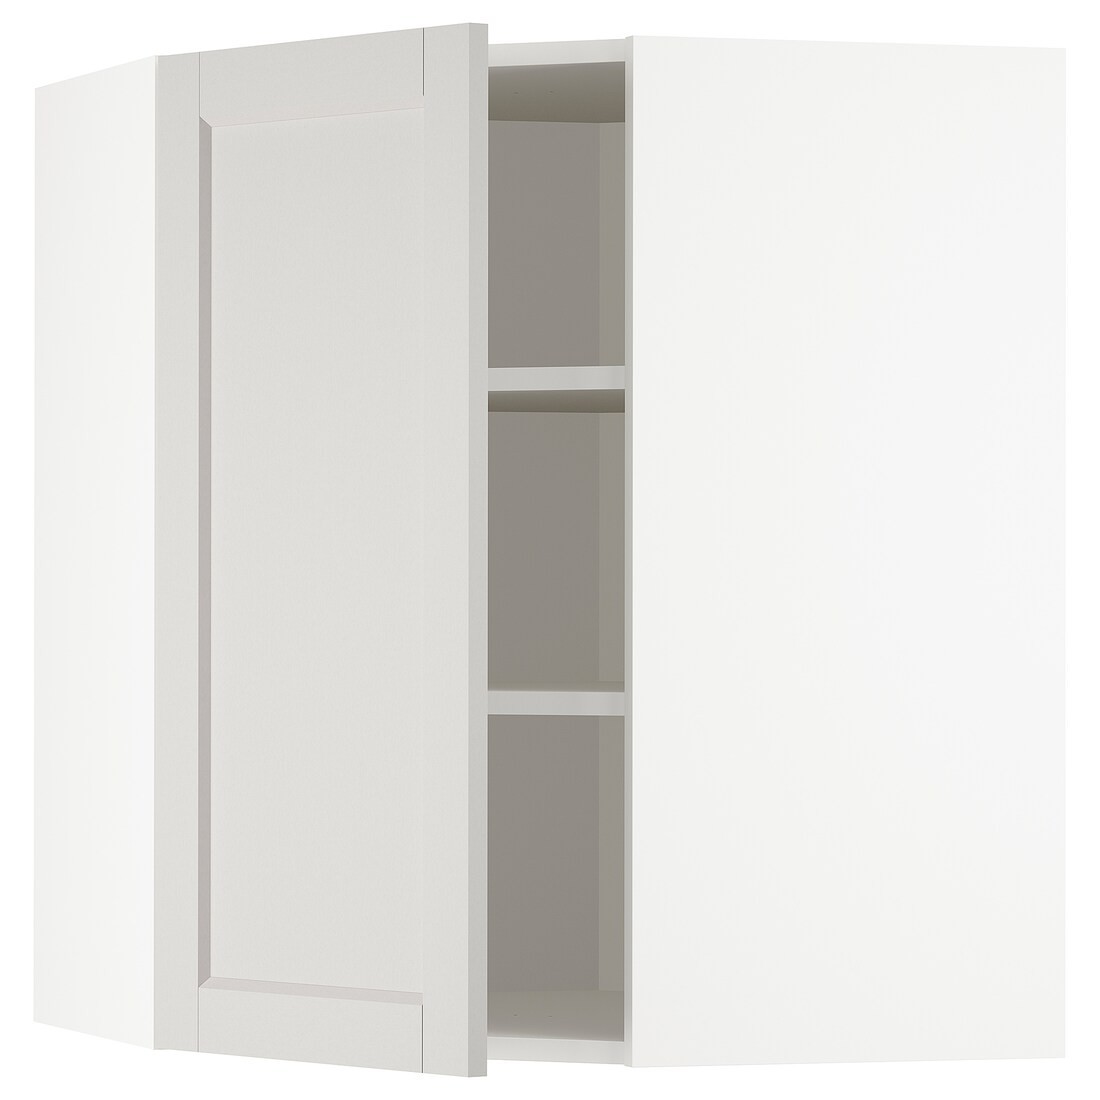 METOD МЕТОД Углов настенный шкаф, белый / Lerhyttan светло-серый, 68x80 см